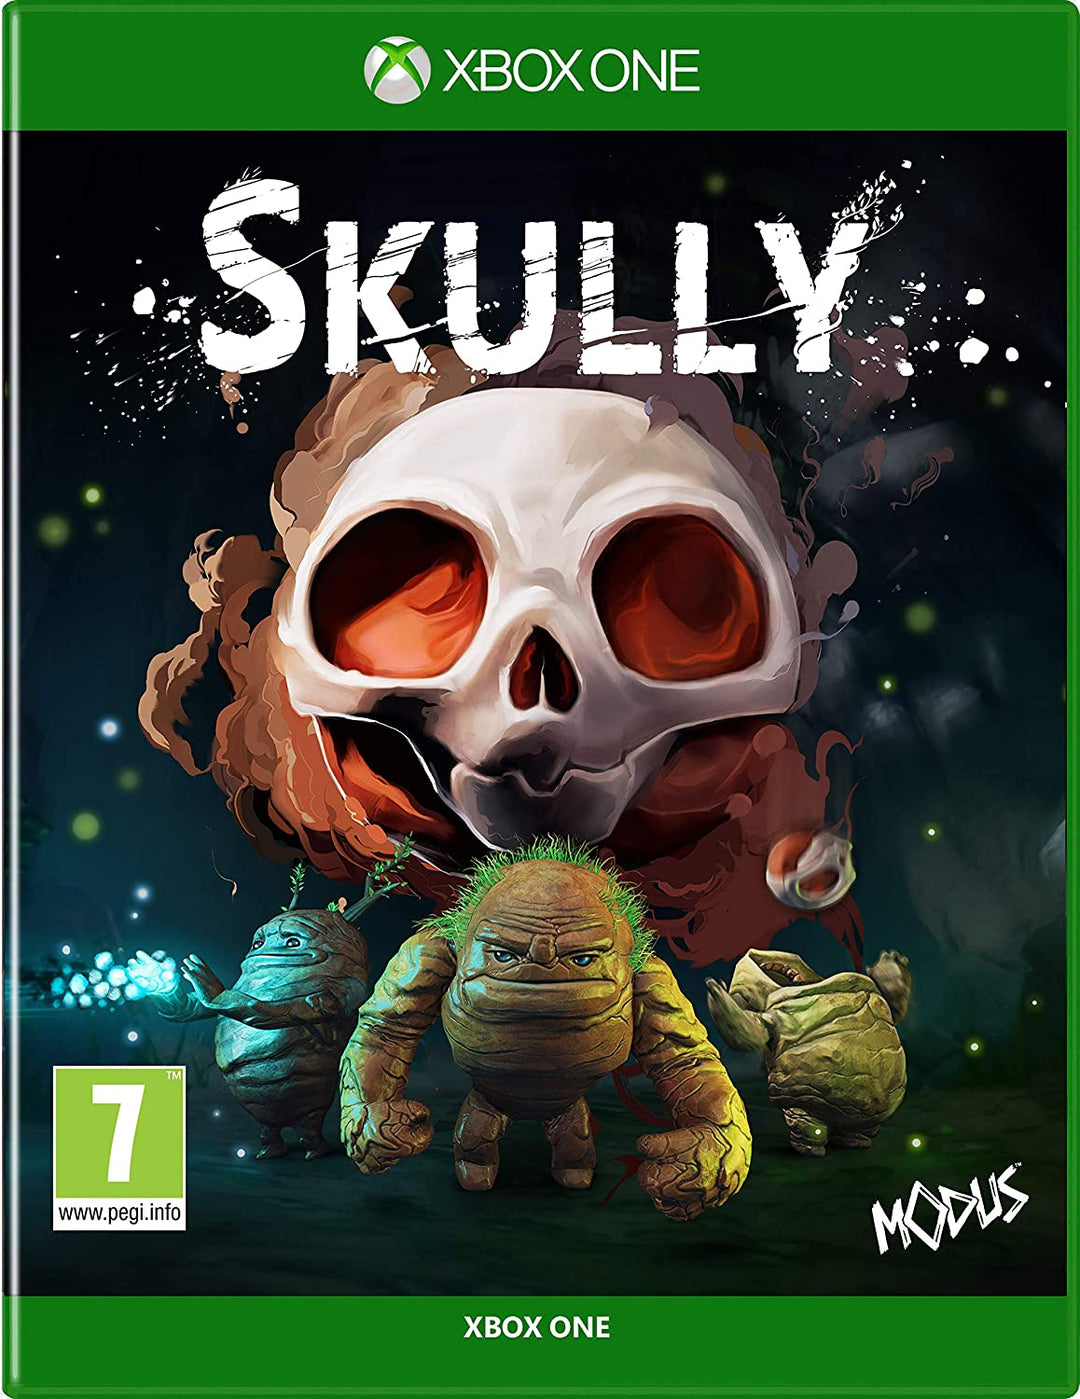 Skully (Xbox One)